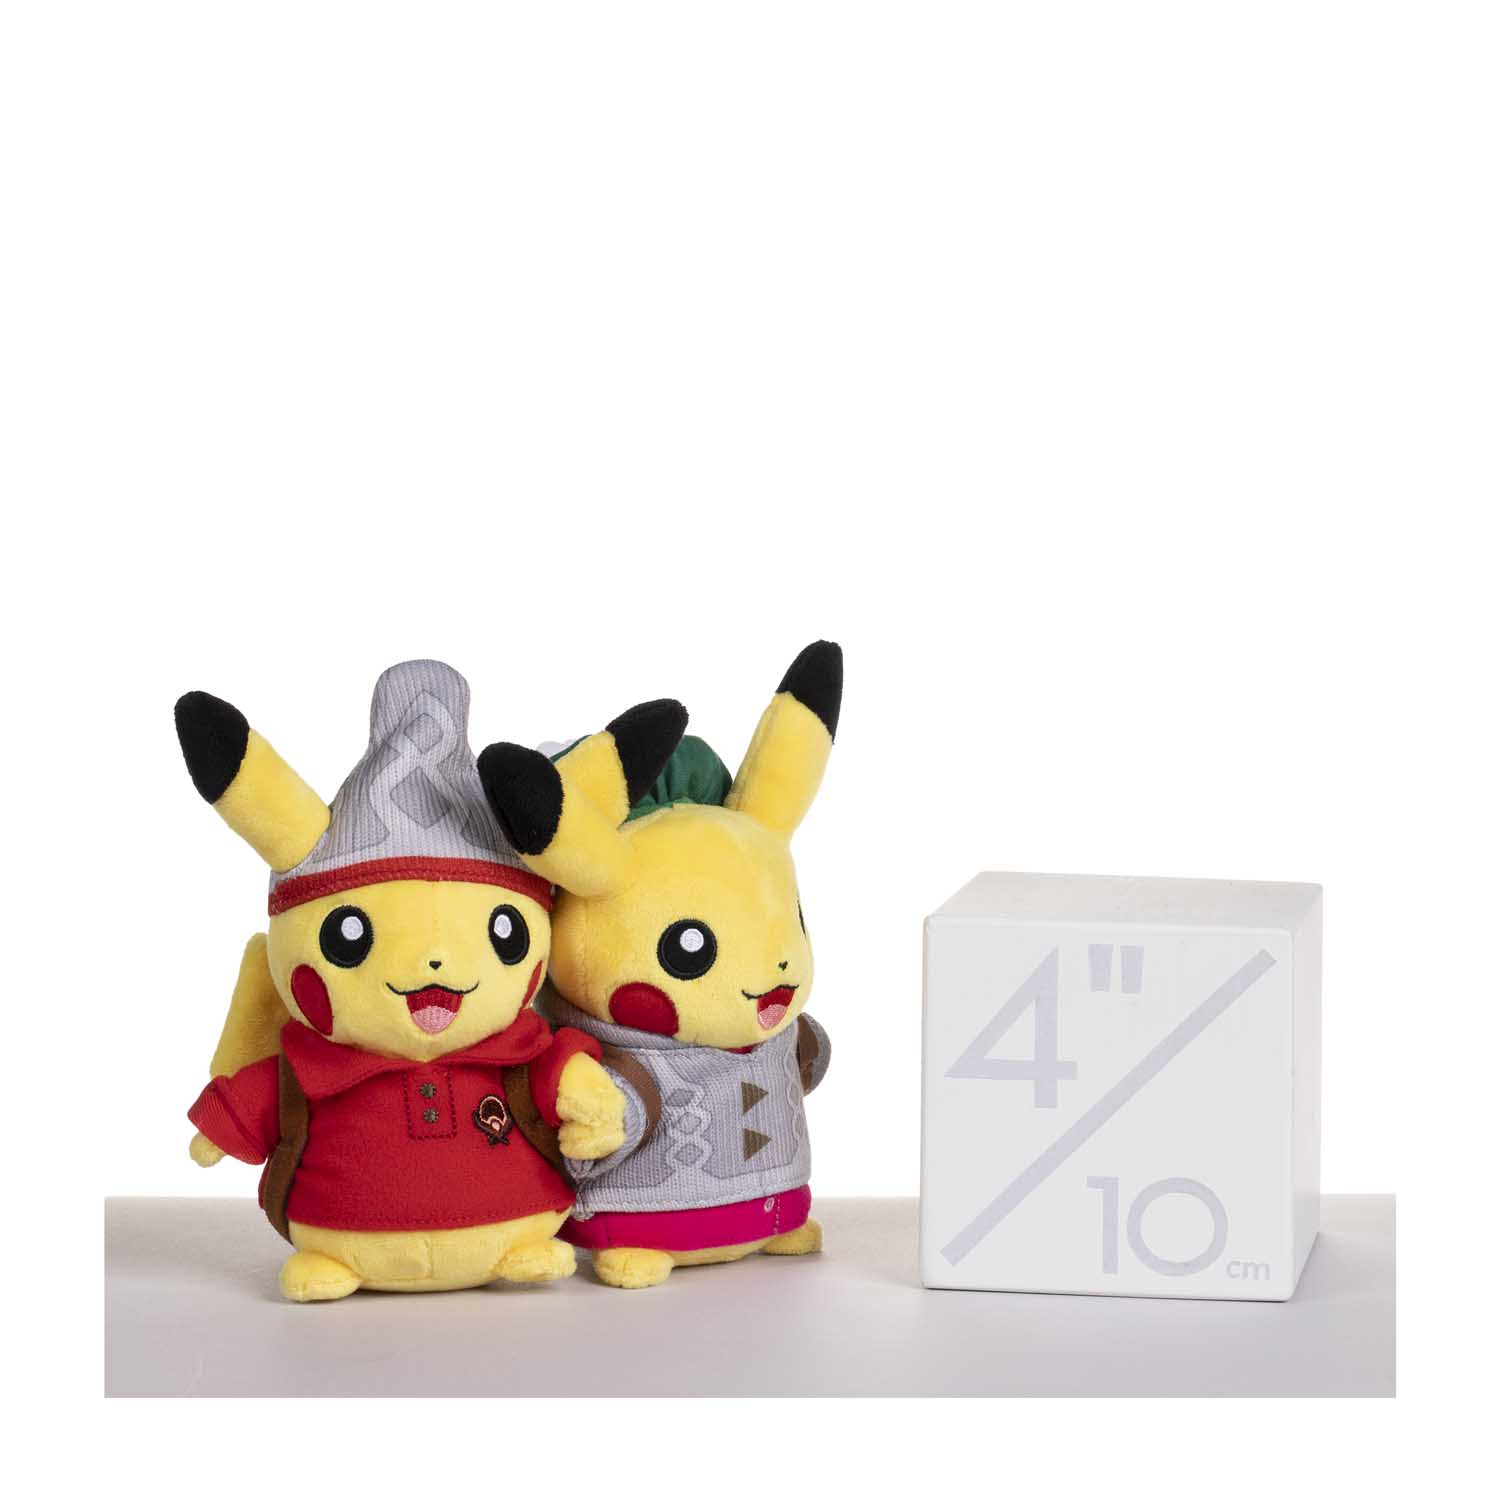 Lançamento das Pelúcias dos Iniciais de Galar nos Pokémon Center do Japão